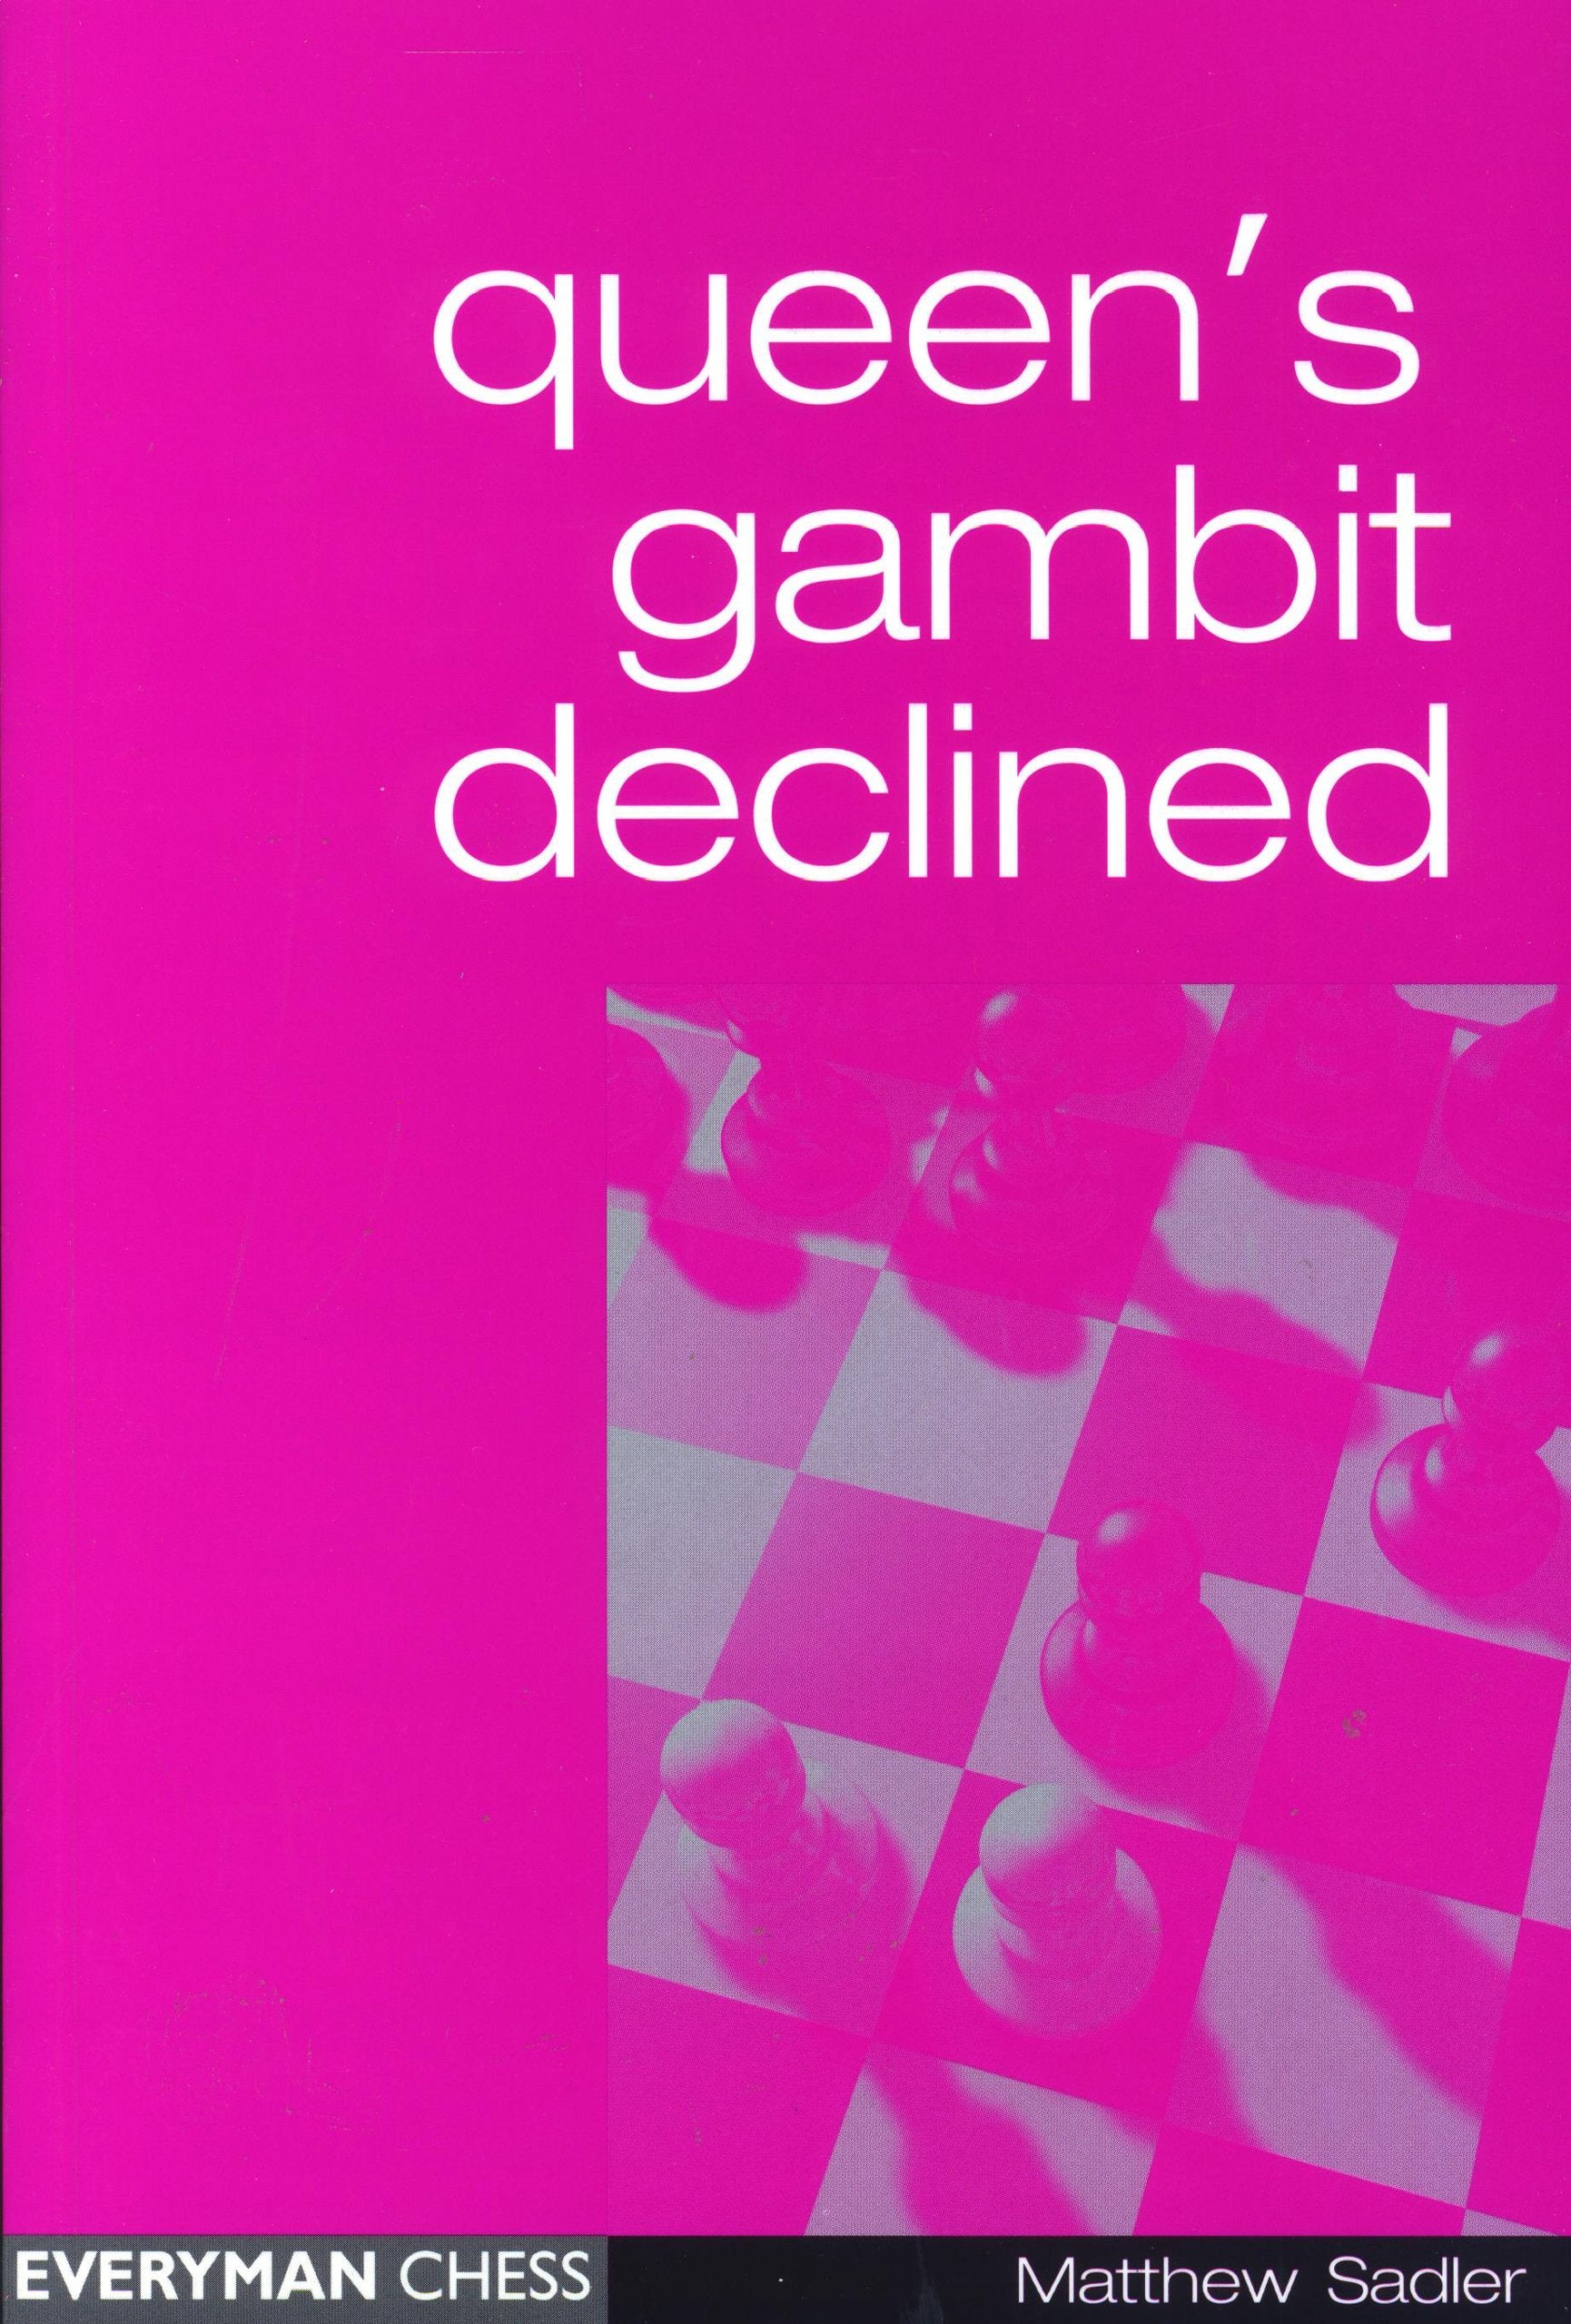 Queen’s Gambit Declined: Vienna